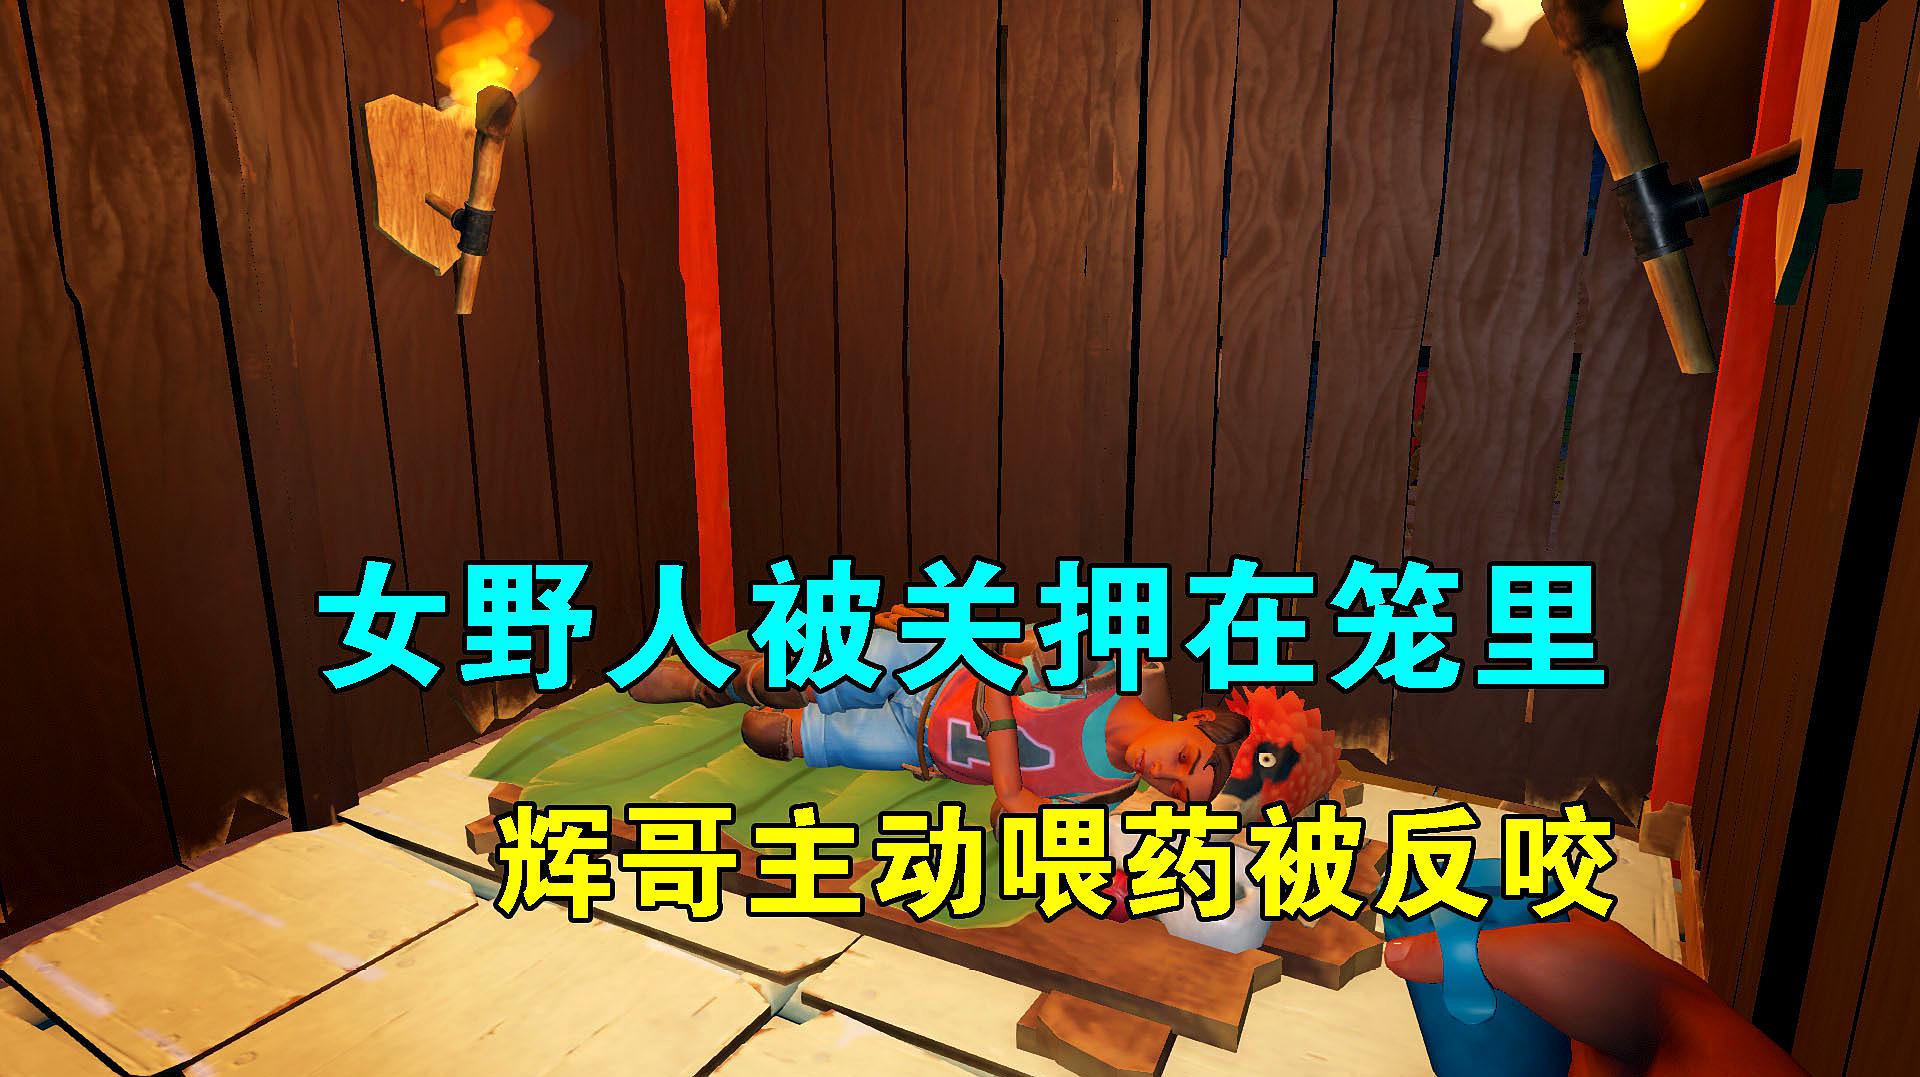 小辉哥游戏解说:沙盒类游戏《木筏求生》的视频合集(三)